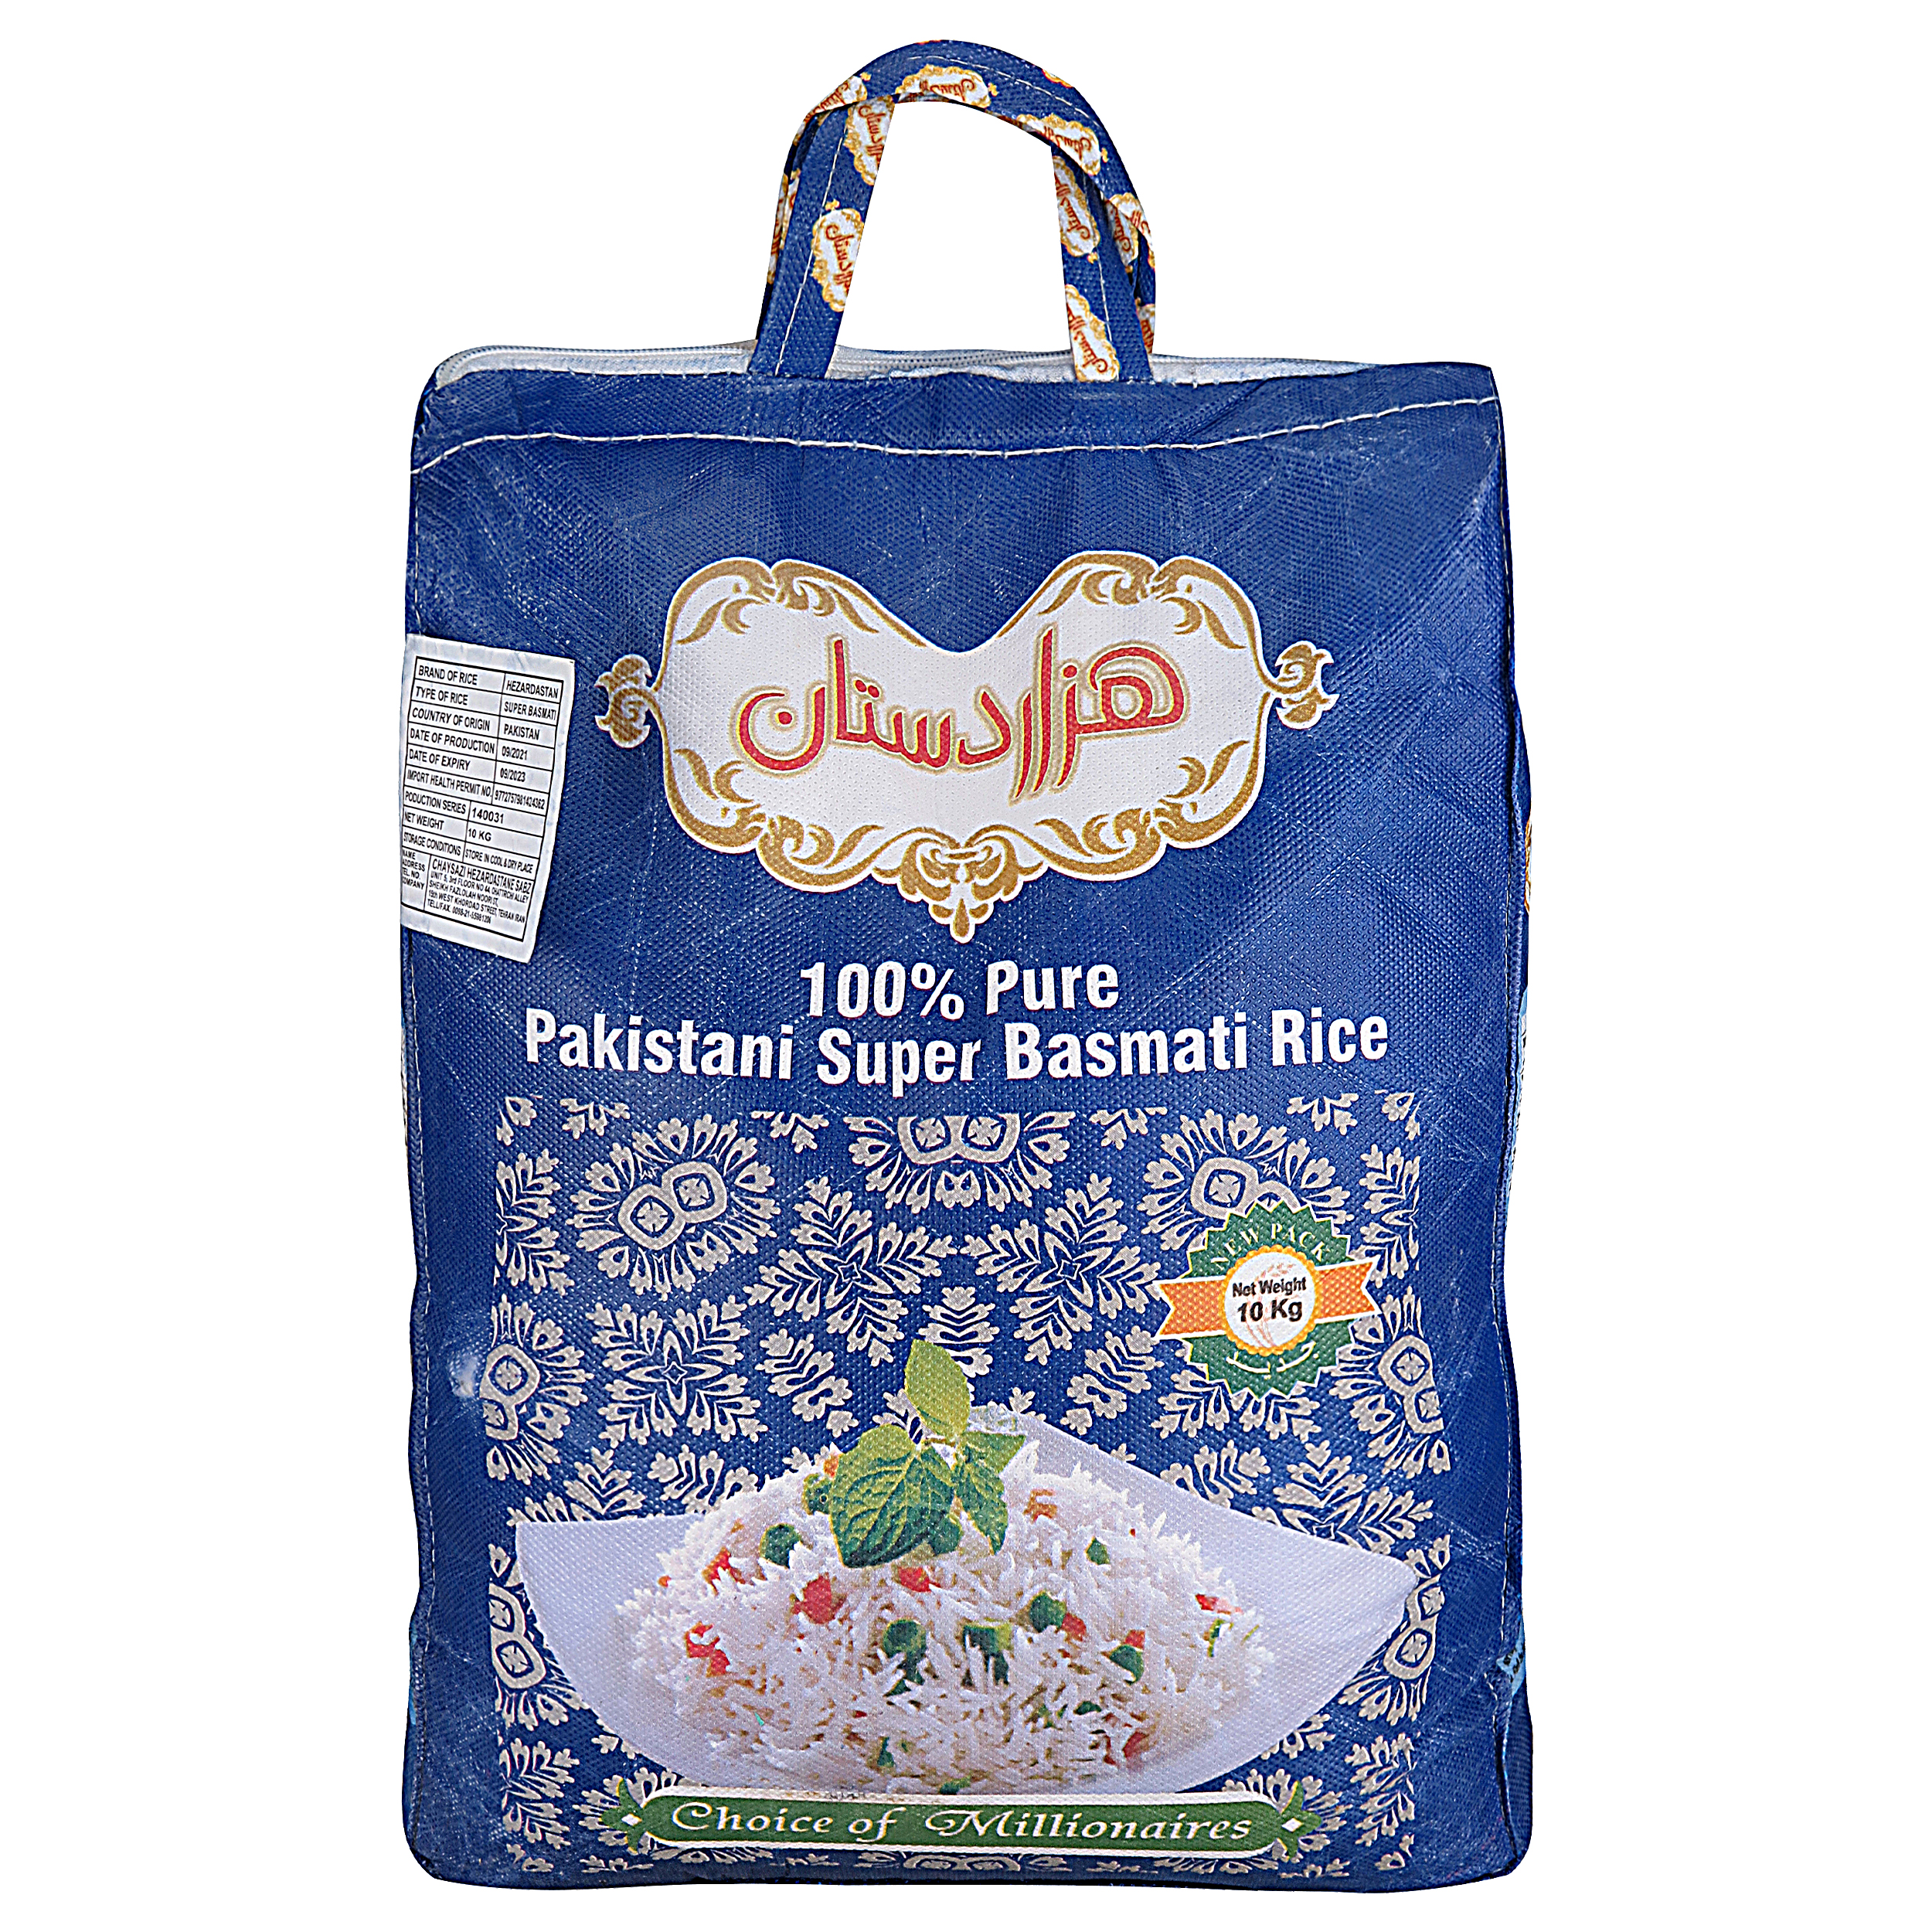 نکته خرید - قیمت روز برنج پاکستانی سوپرباسماتی هزاردستان - 10 کیلوگرم خرید